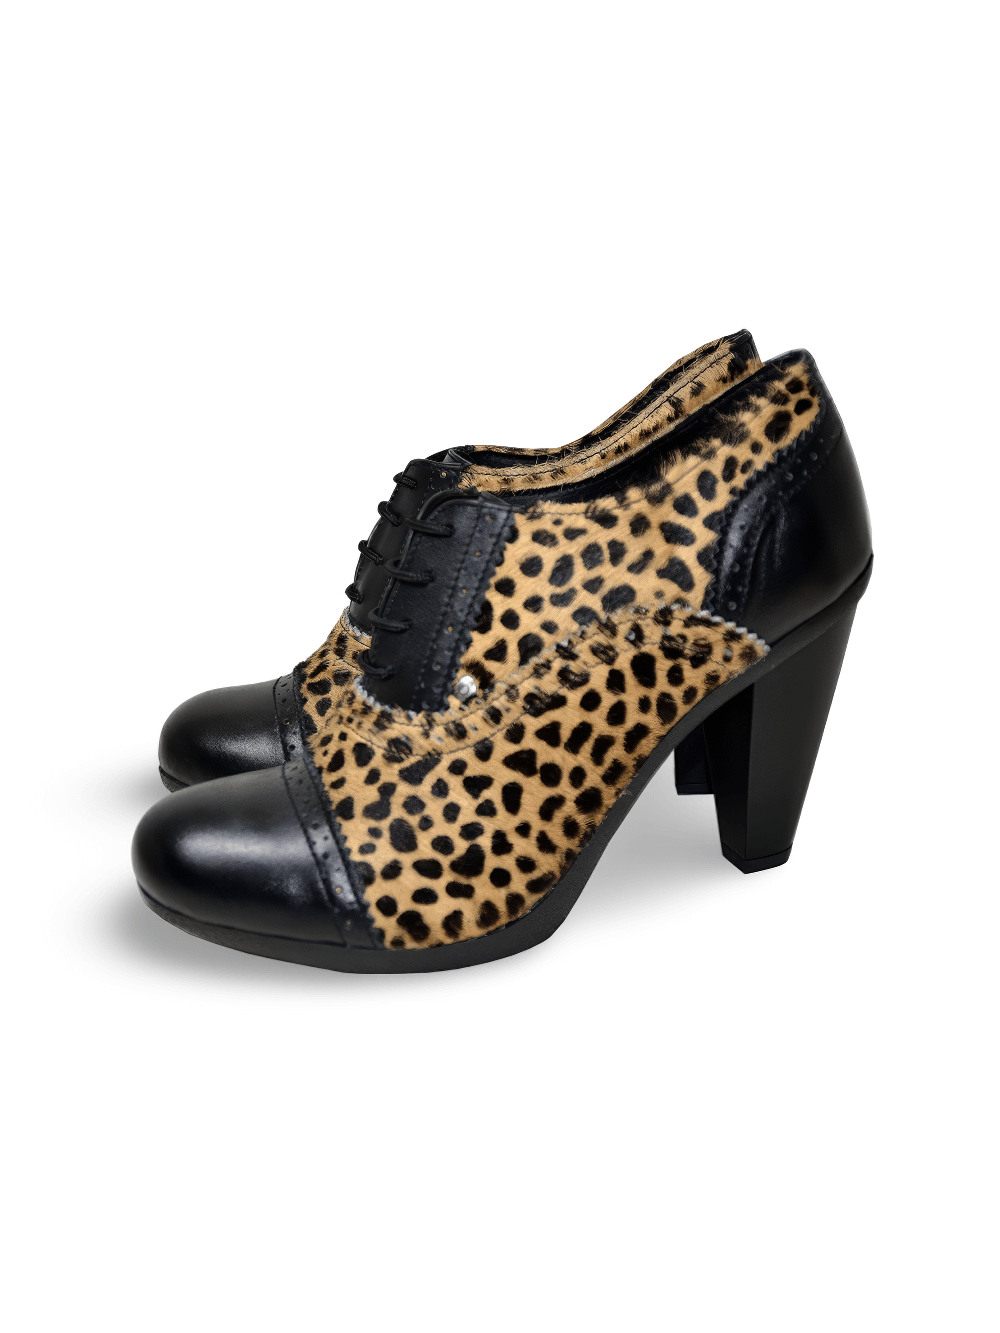 Botines de piel de tacón alto con estampado de leopardo para mujer